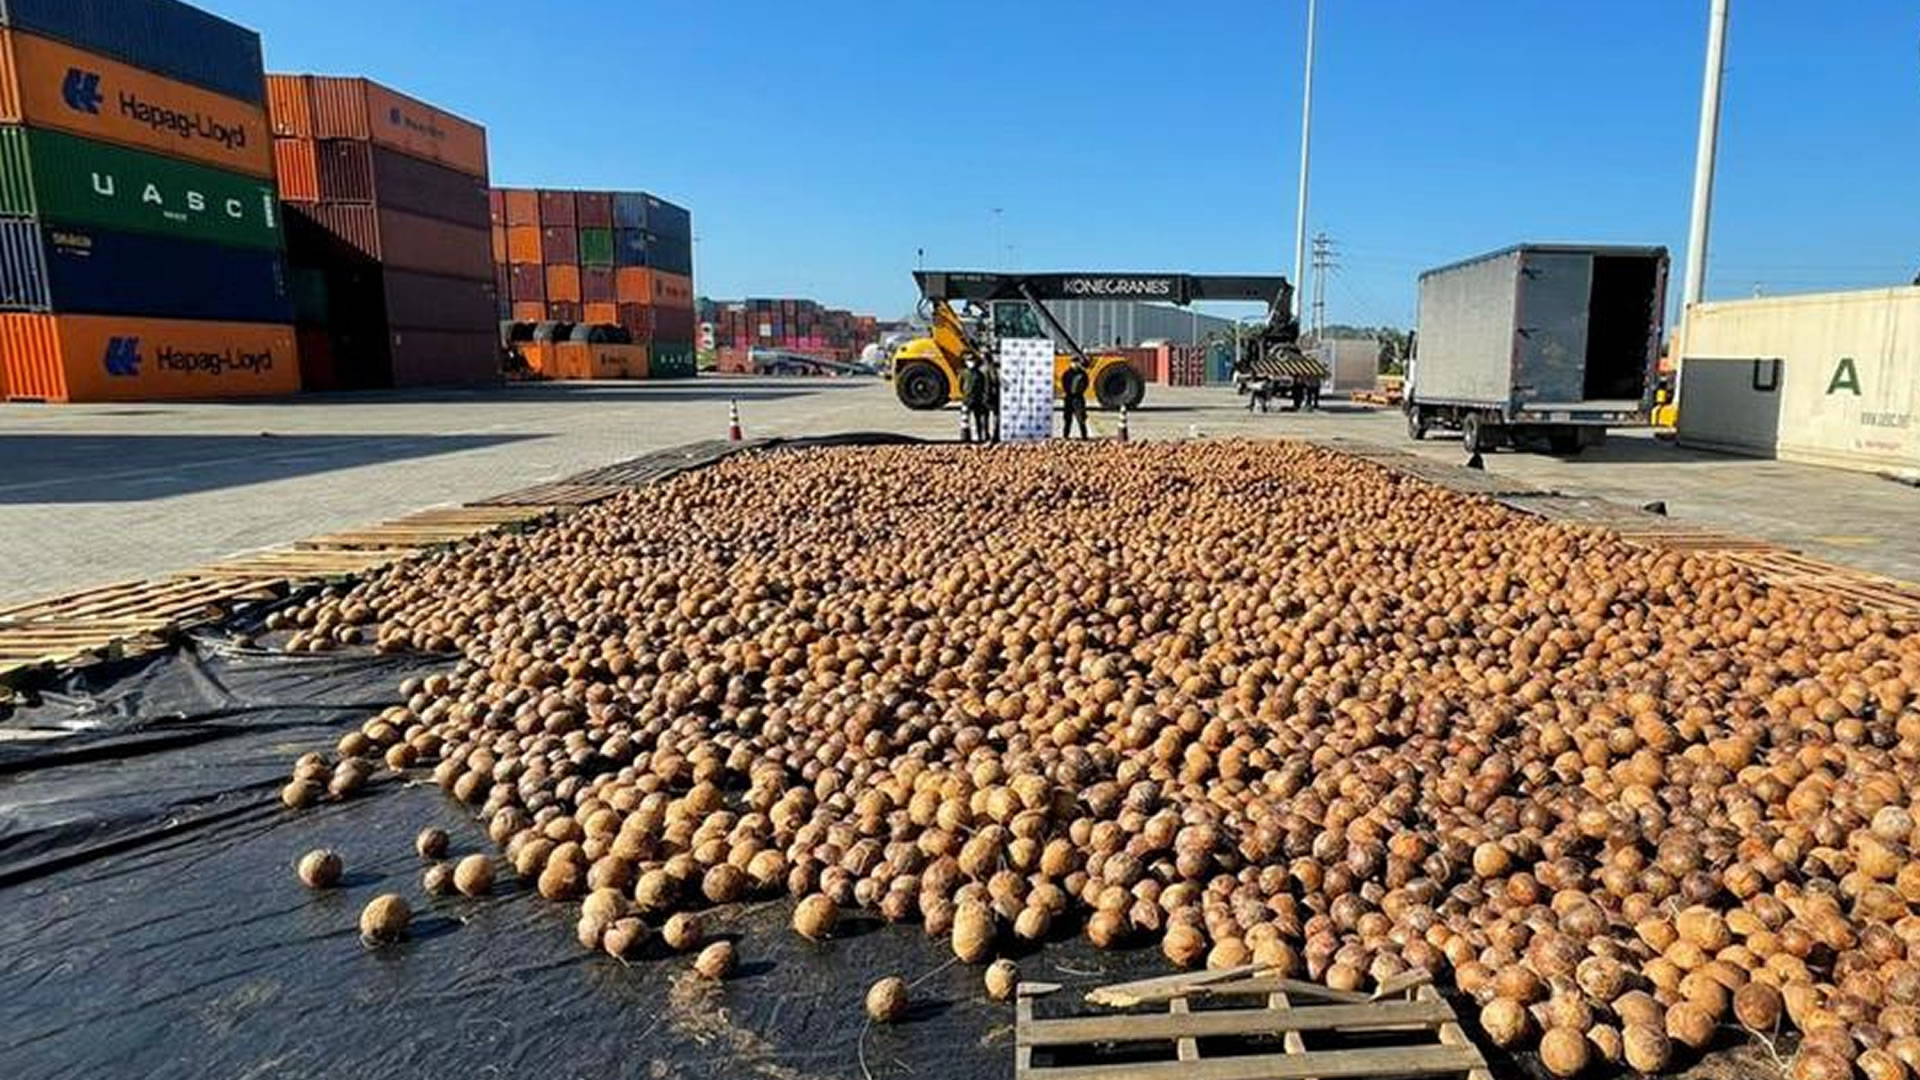 Hallan cargamento de 20.000 cocos con cocaína líquida que pretendía salir de Cartagena a Europa. Cortesía de la Fiscalía General de la Nación.